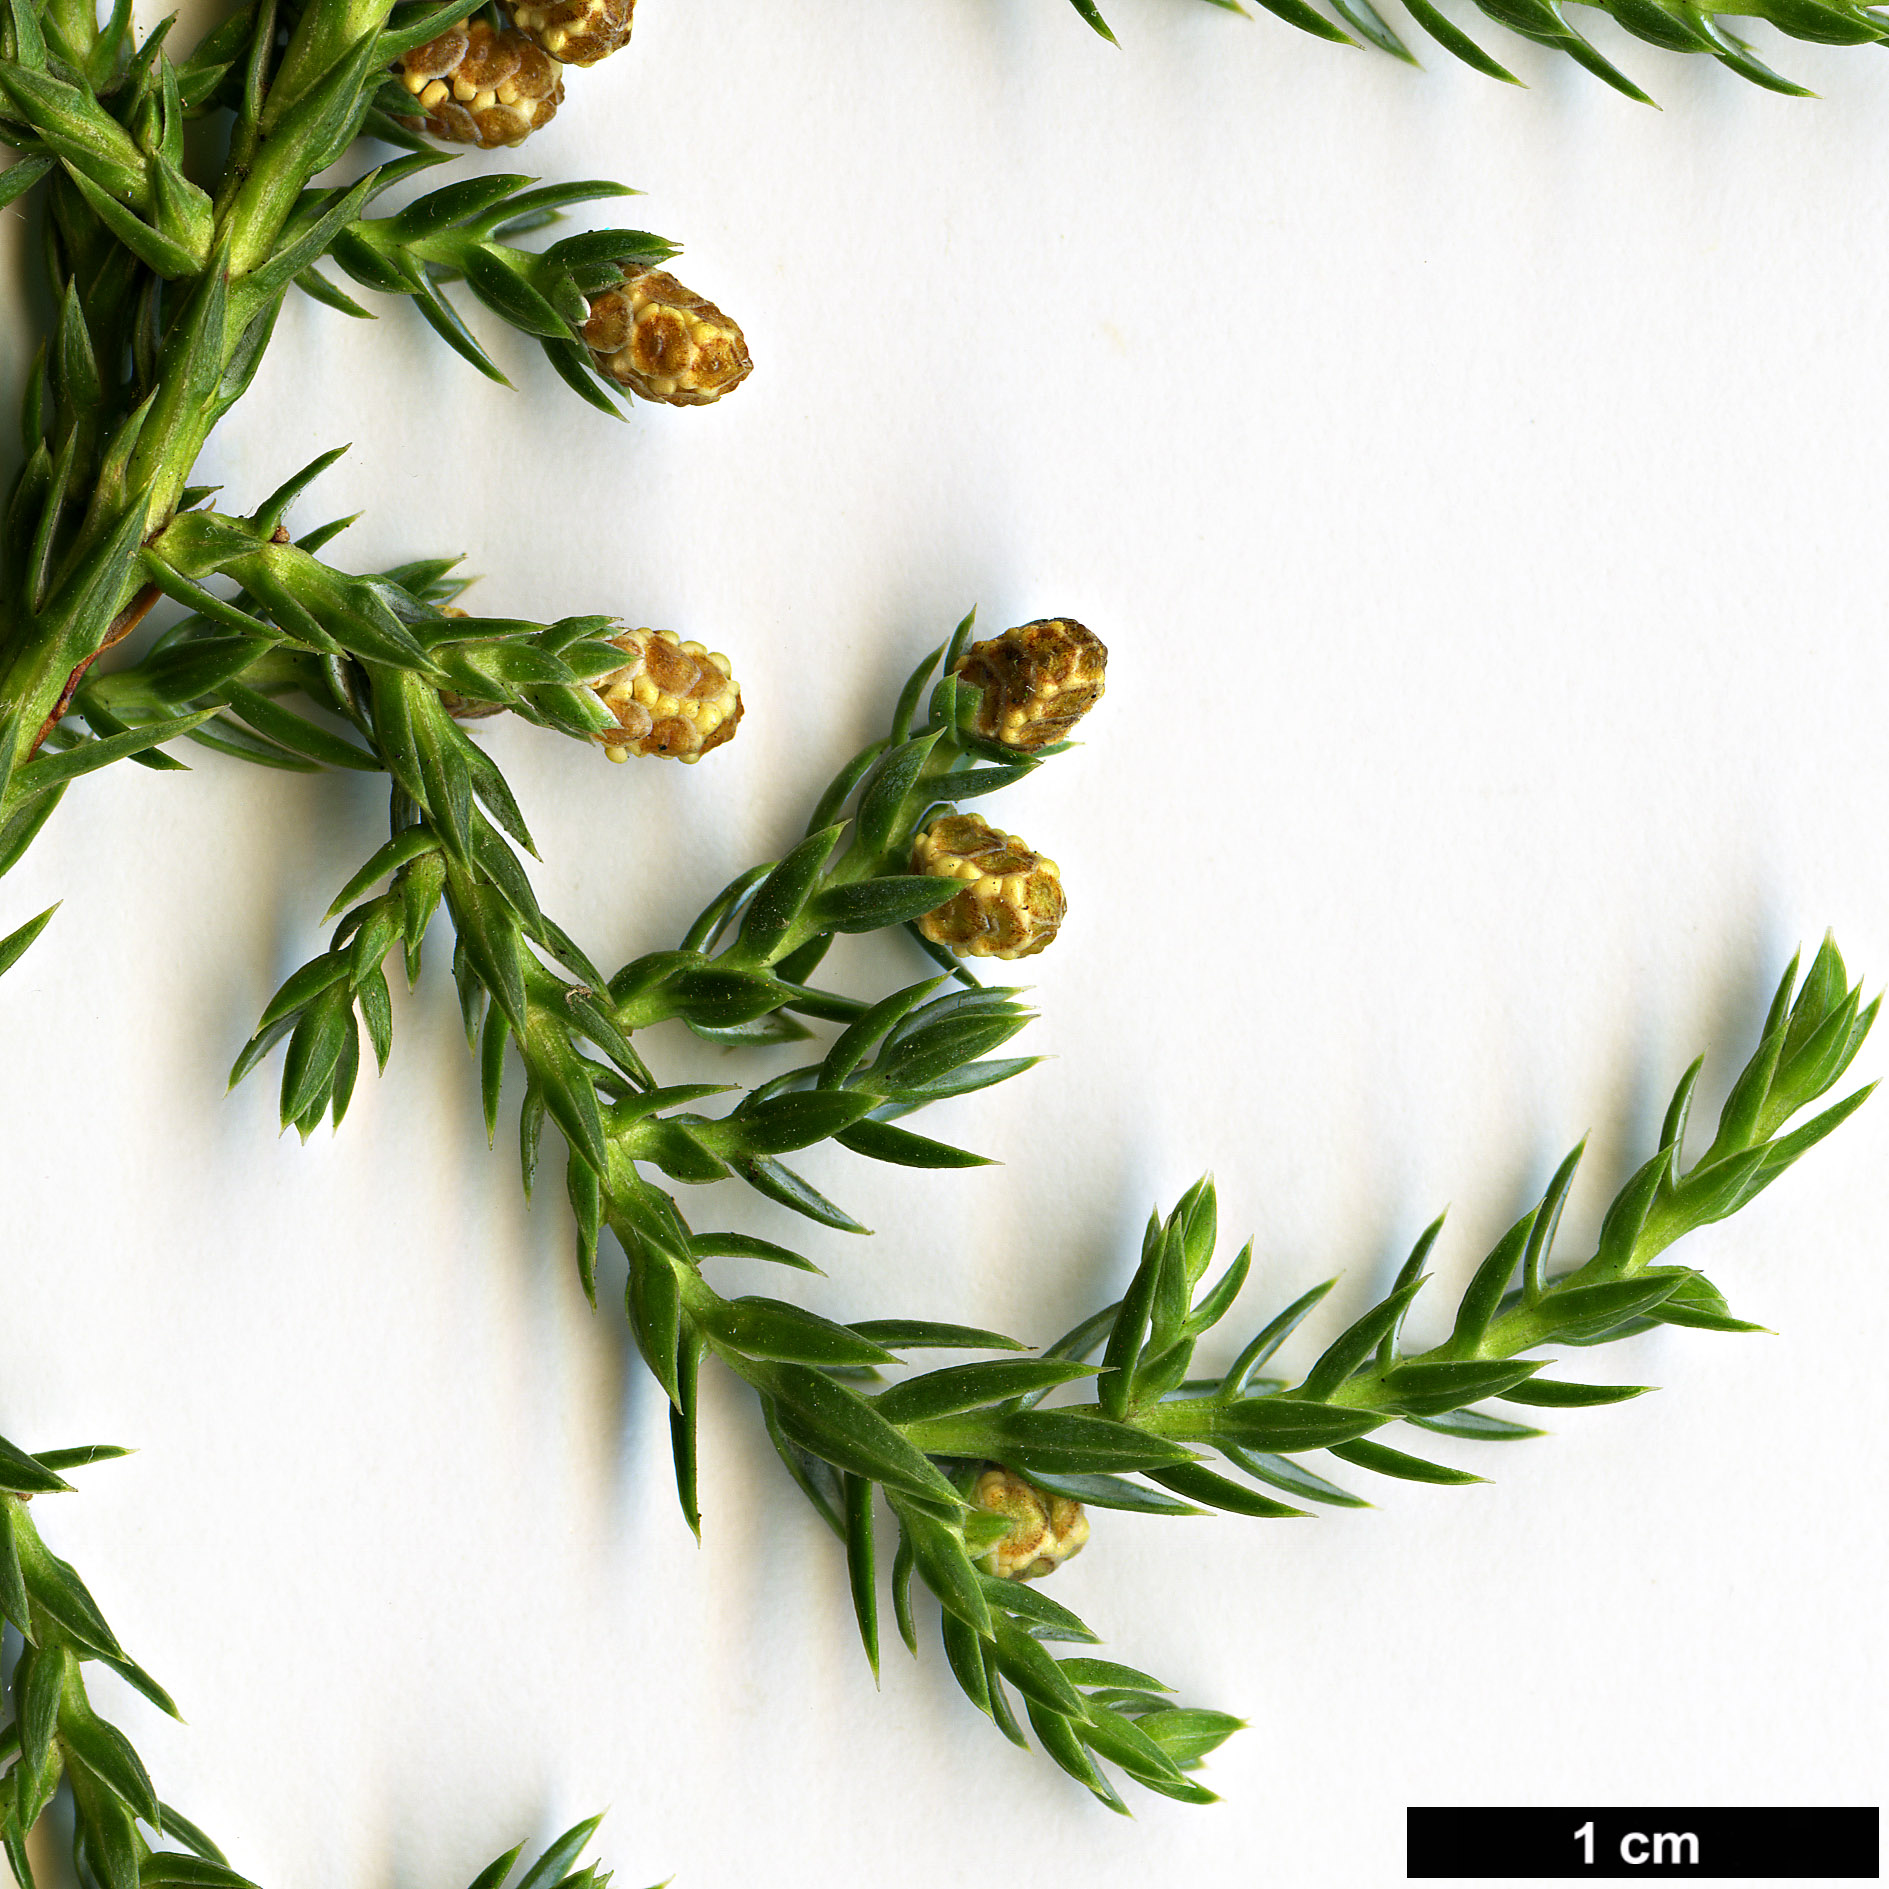 High resolution image: Family: Cupressaceae - Genus: Juniperus - Taxon: indica